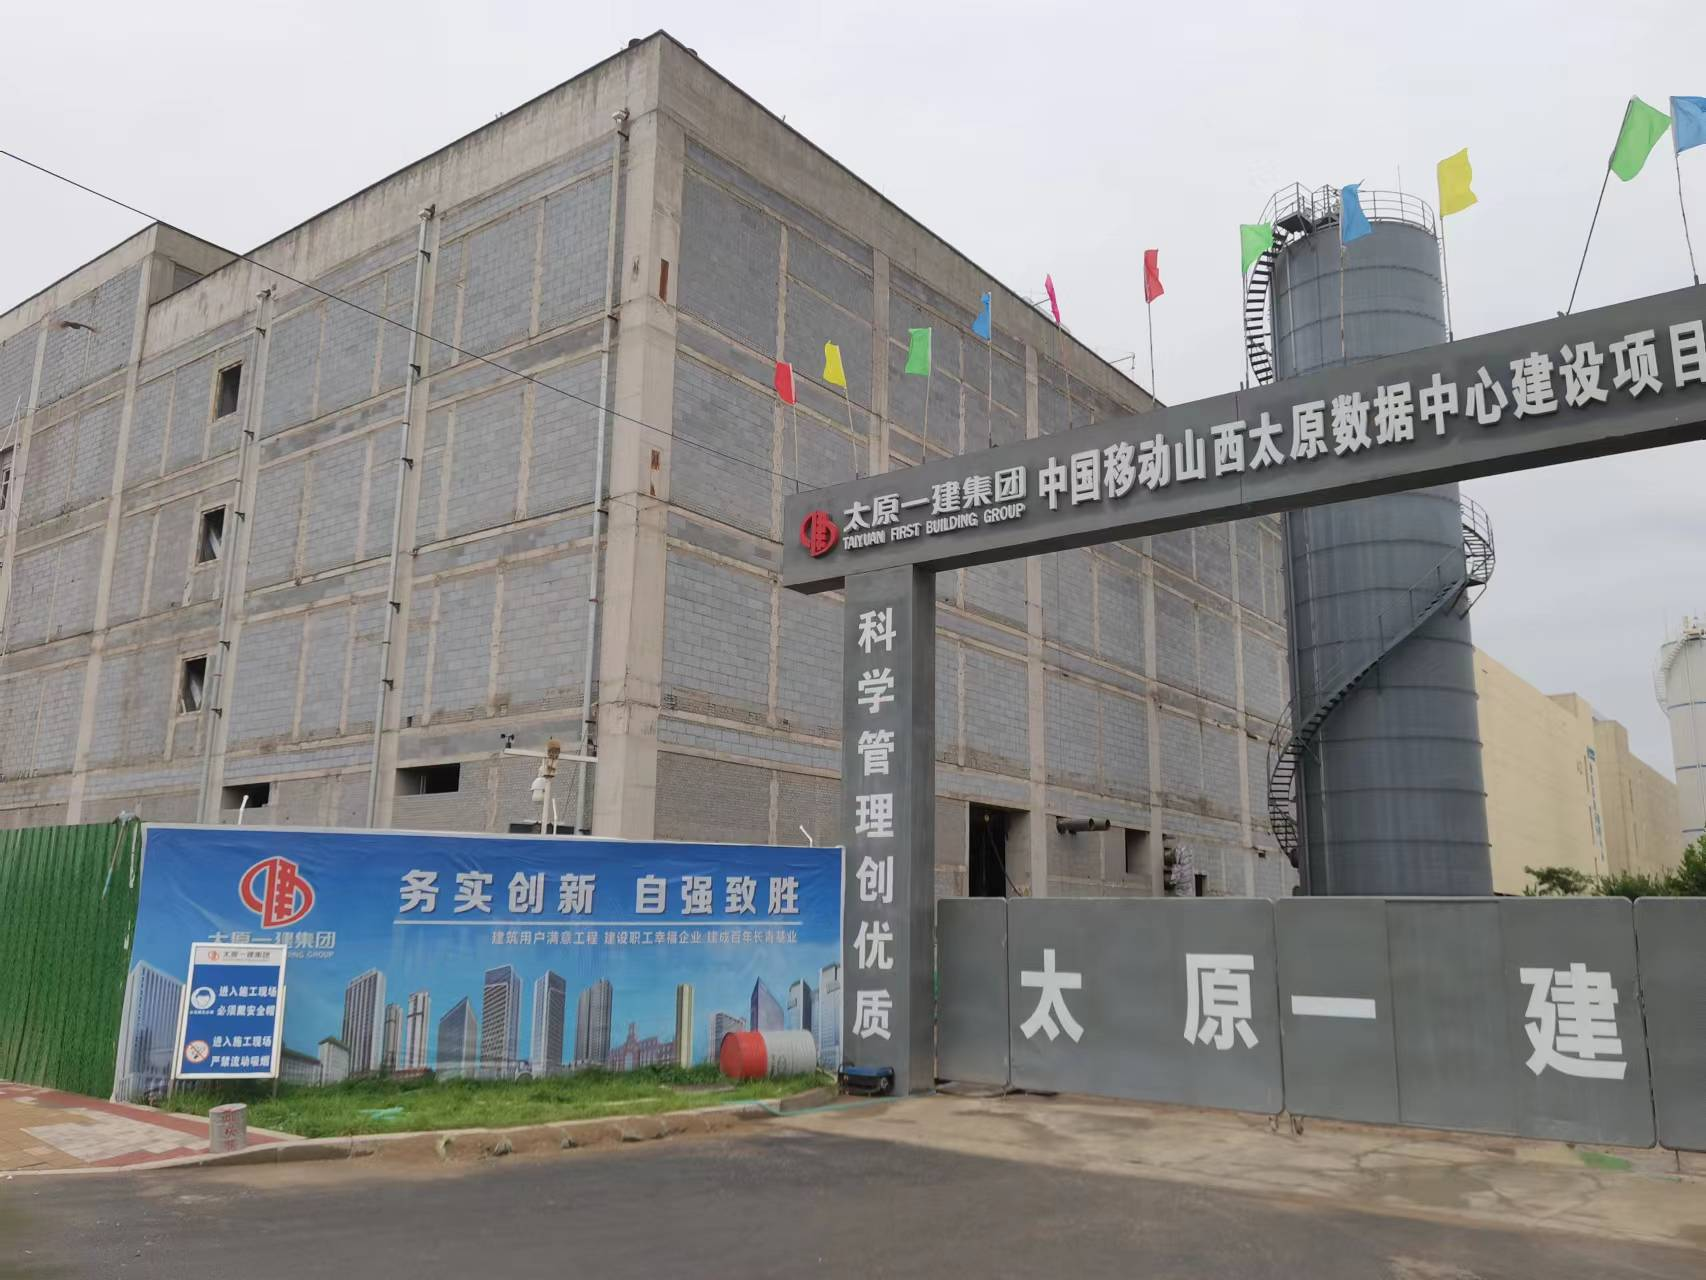 Projekt mobilnego centrum danych Taiyuan